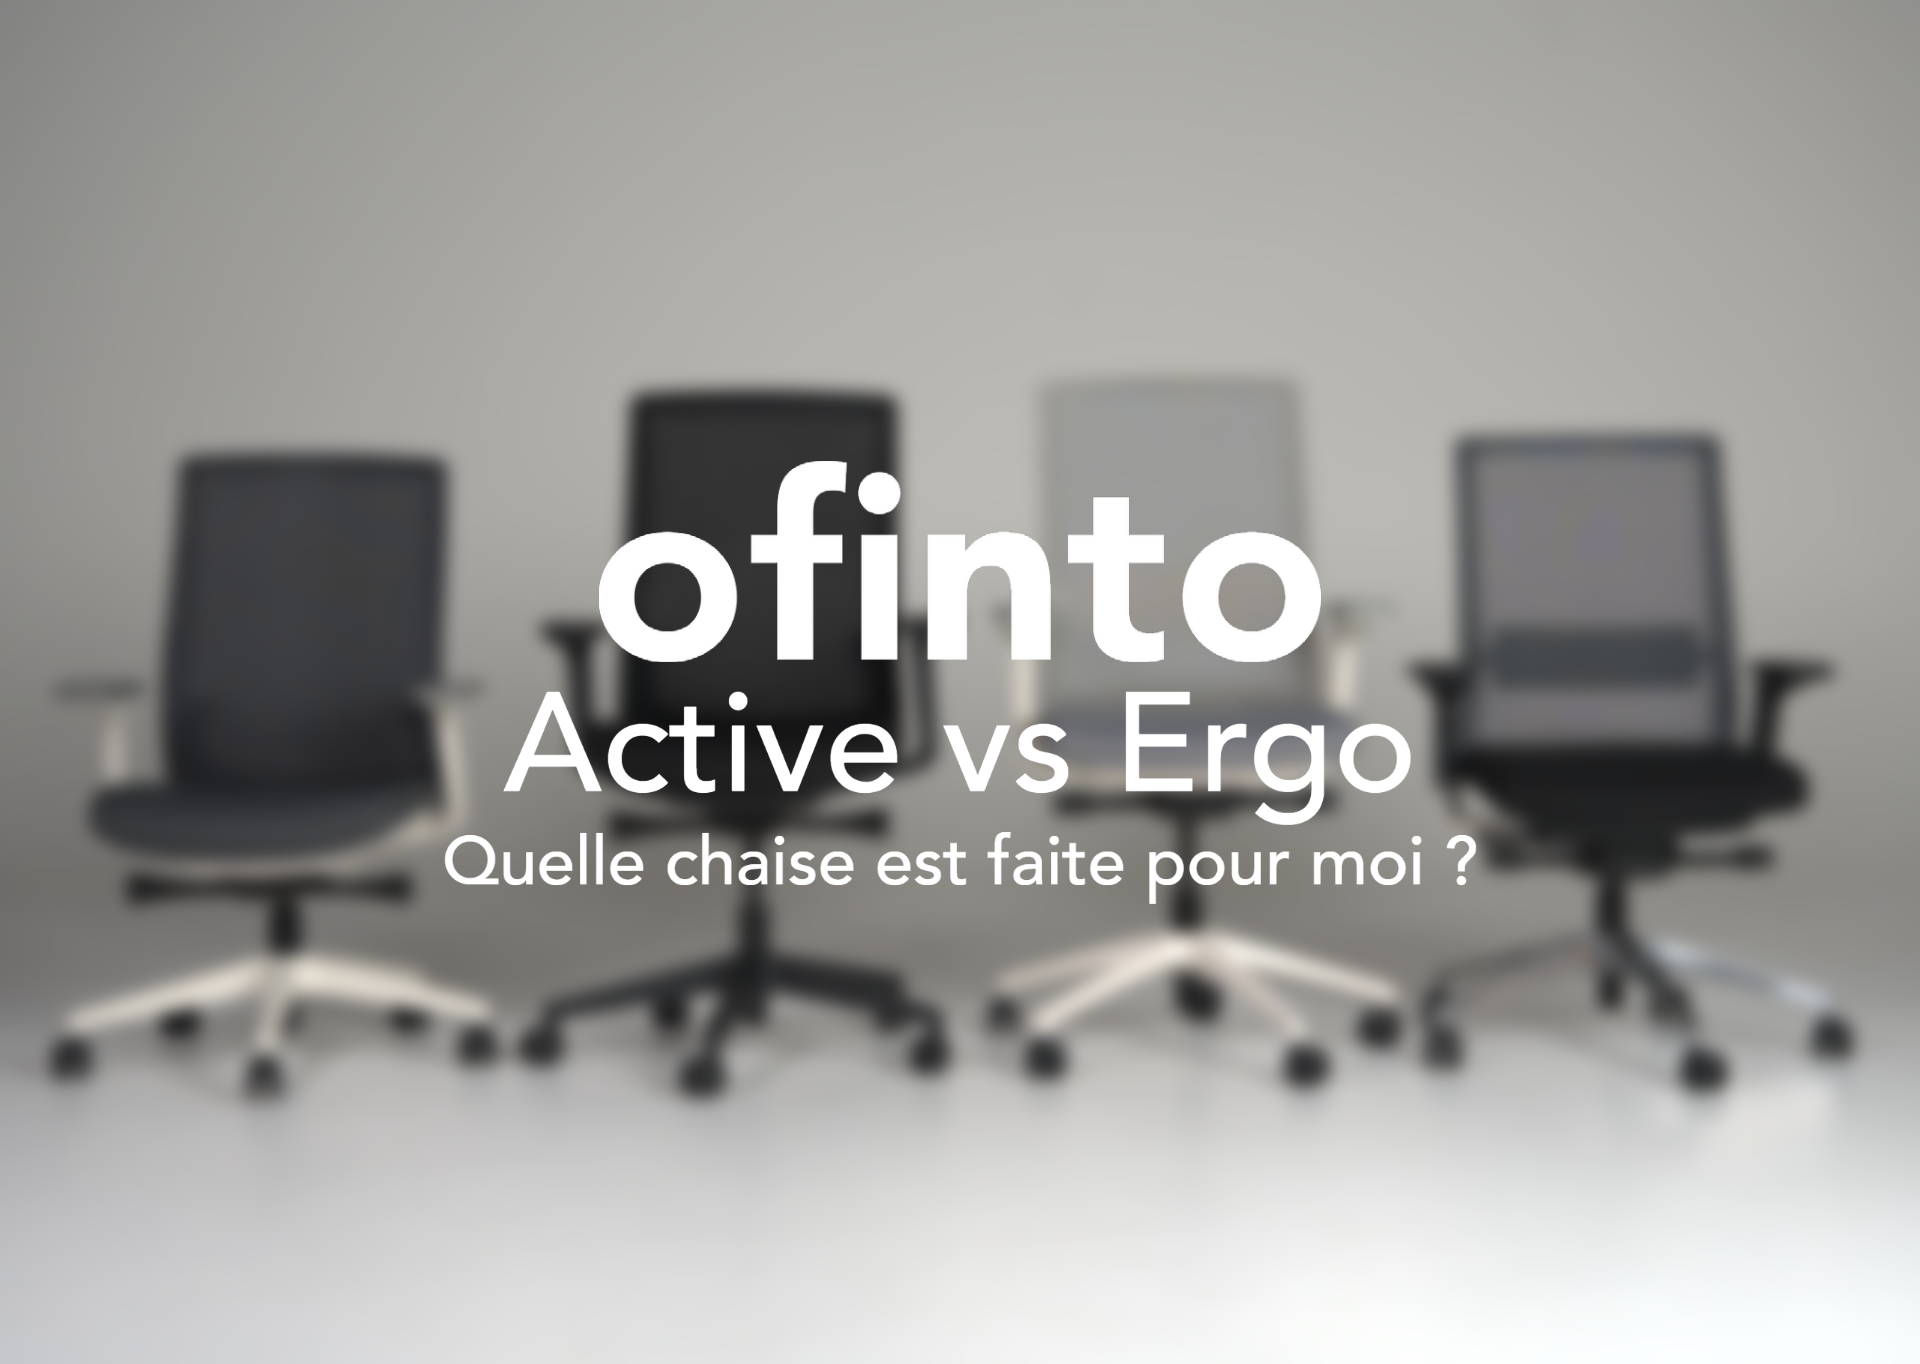 Le comparatif des chaises de bureau : ofinto Active vs. Ergo